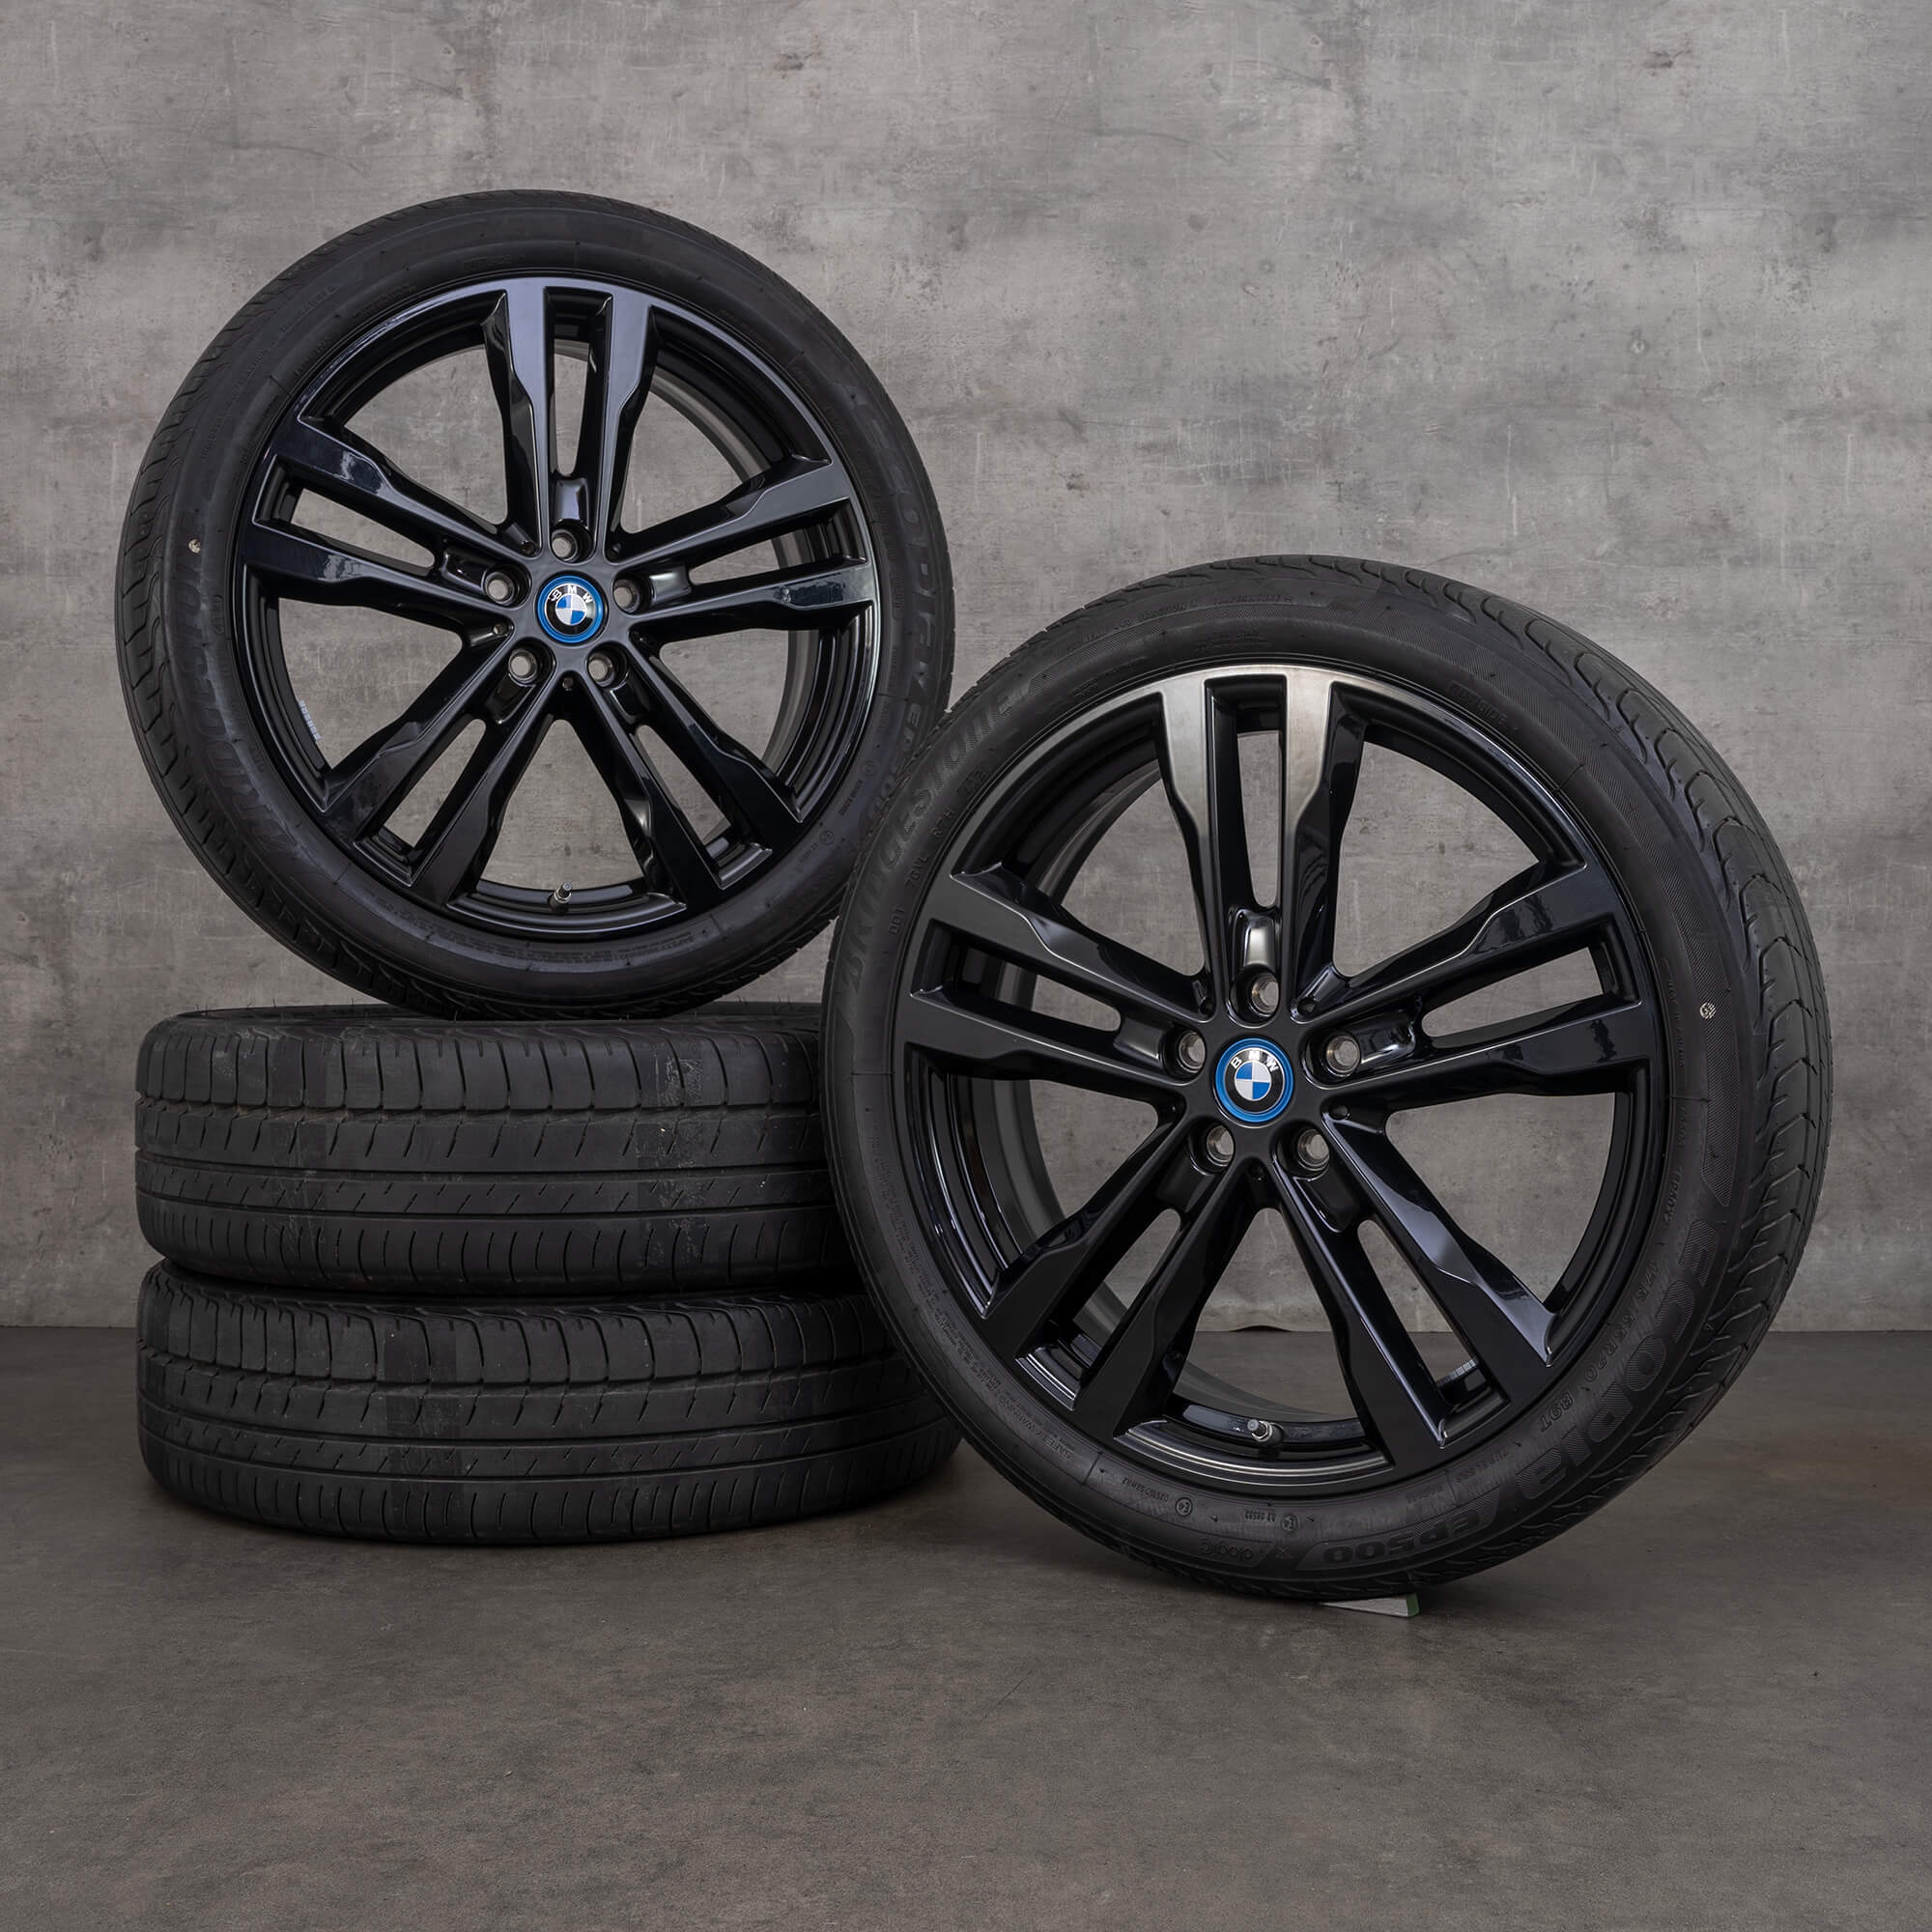 BMW i3s I01 pneus de verão rodas jantes 20 polegadas estilo 431